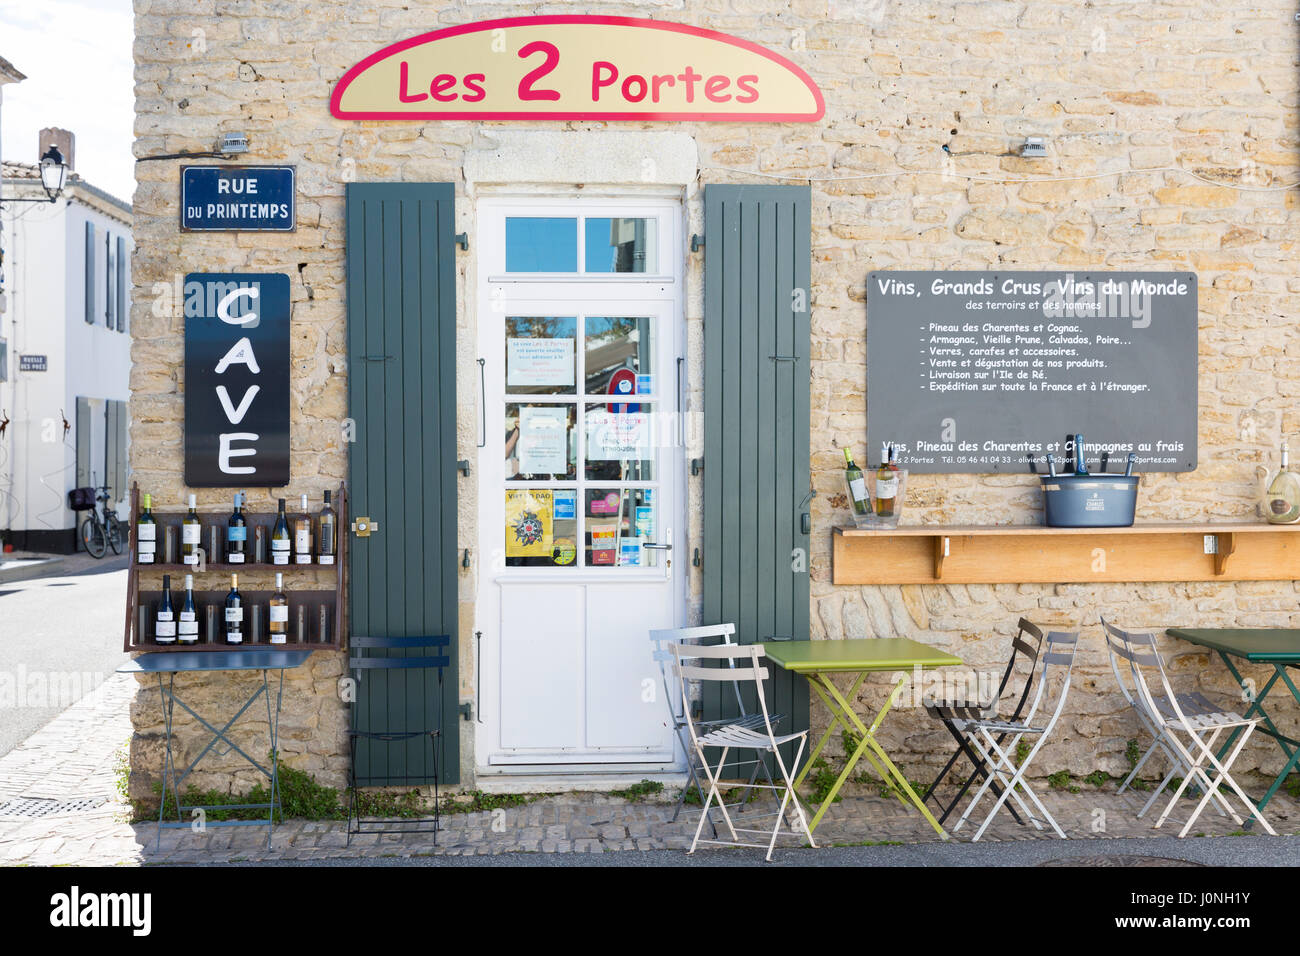 Degustazione di vino shop bar Les 2 Portes in Rue de Printemps, e persiane di legno, Les Portes en Re, Ile de Re, Francia Foto Stock